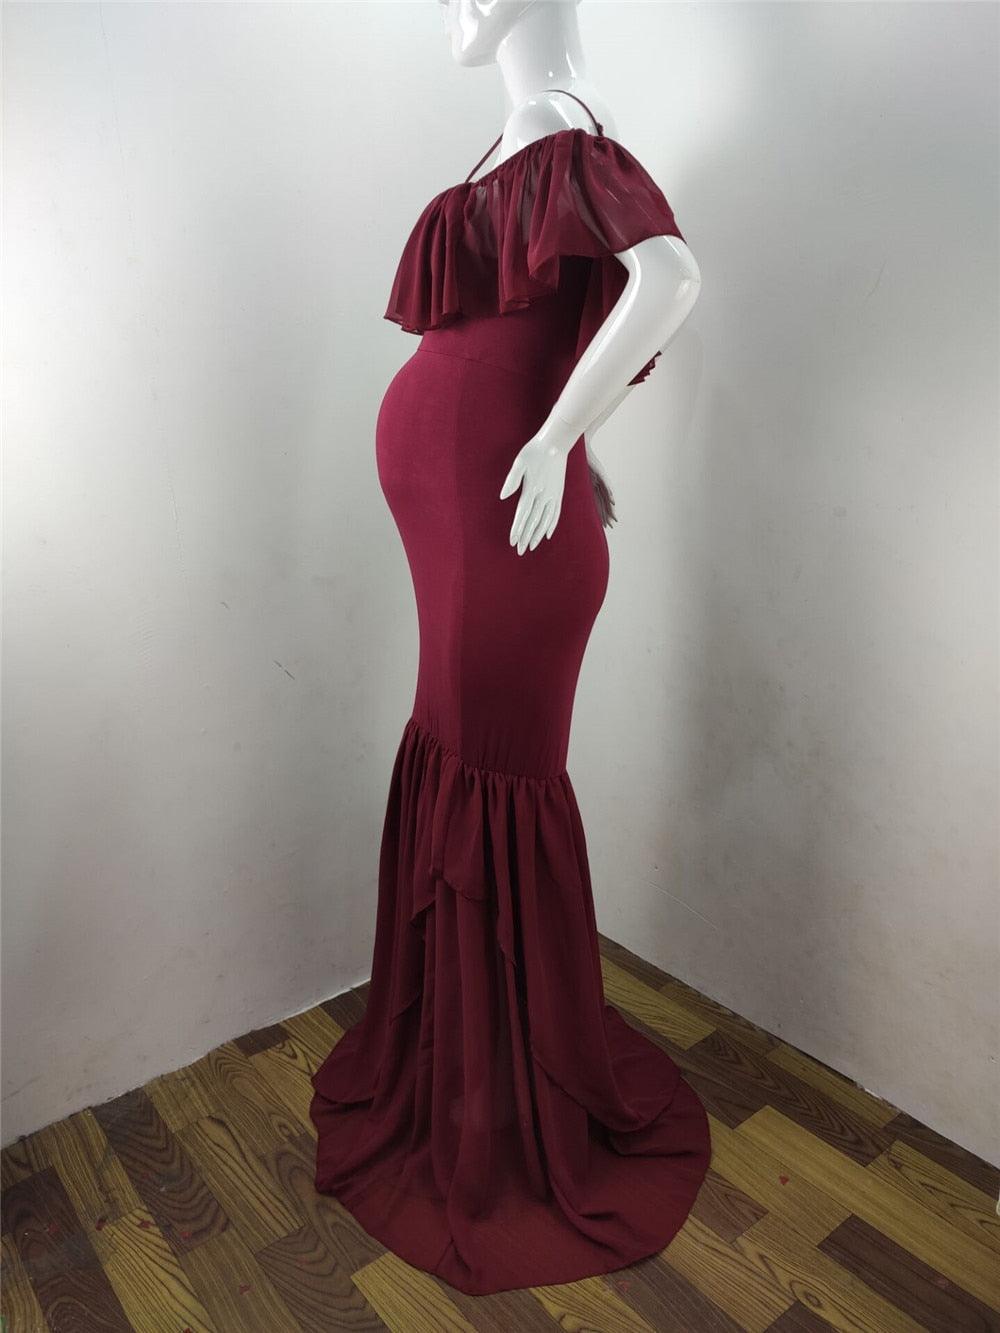 Ruffles Maxi Maternity Gown For Photo Shoots - Cute Sexy Maternity Dresses Photography - Plus Size (1U5)(Z6)(Z8)(1Z1)(2Z1)(3Z1)(4Z1)(7Z1)